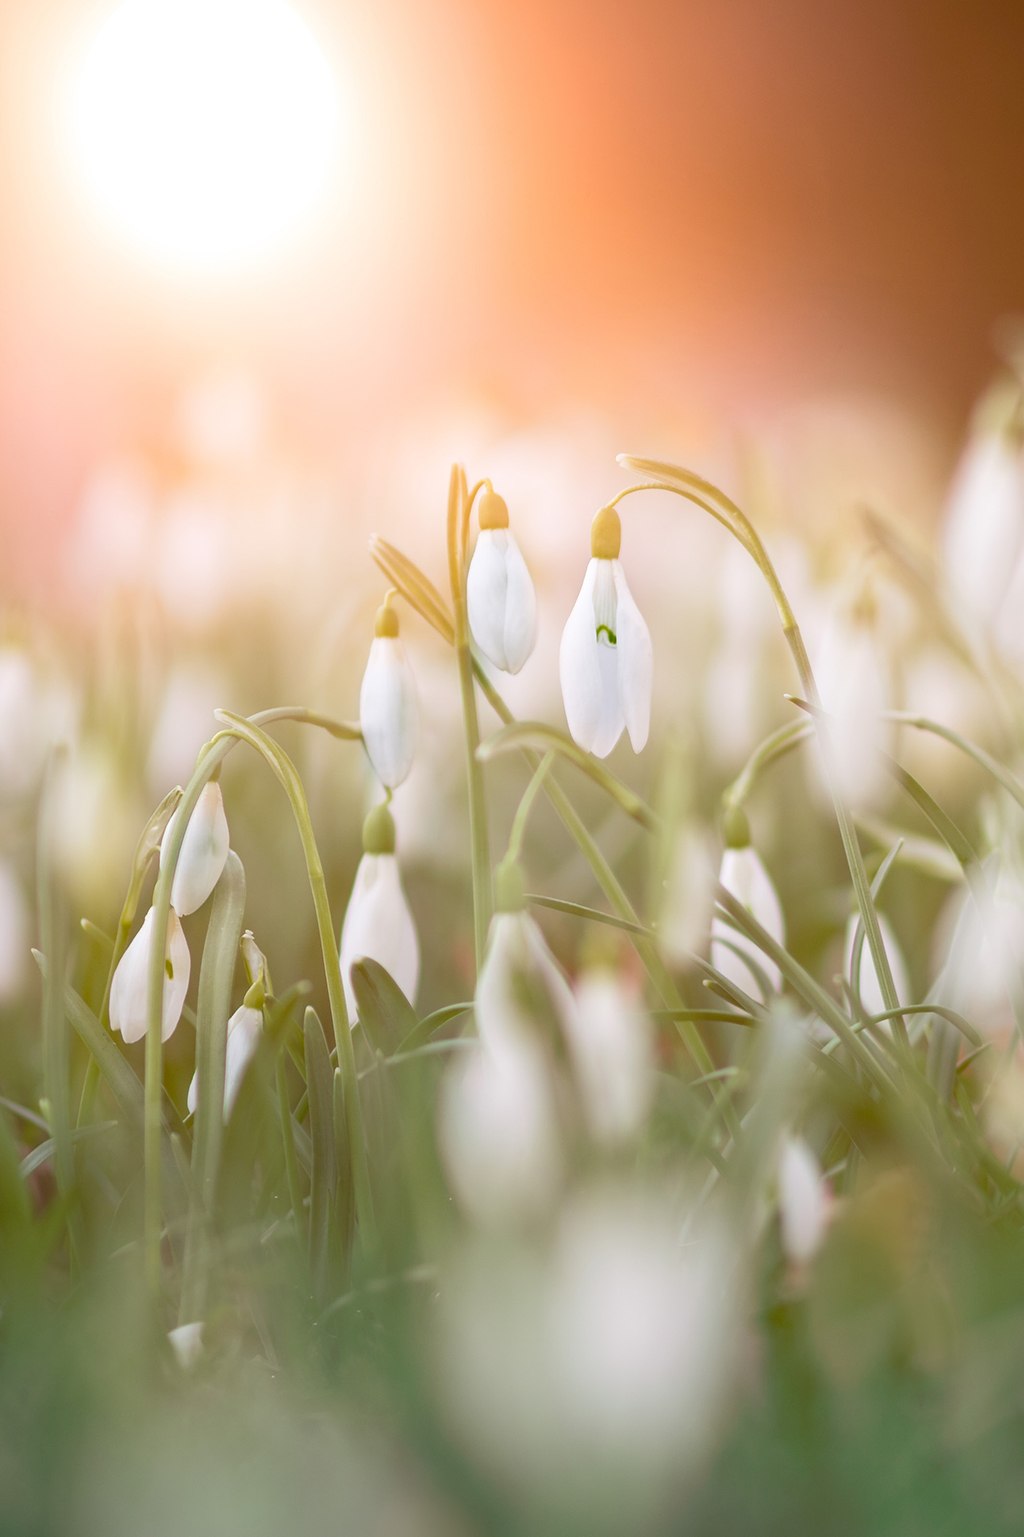 Snowdrop flowers in field